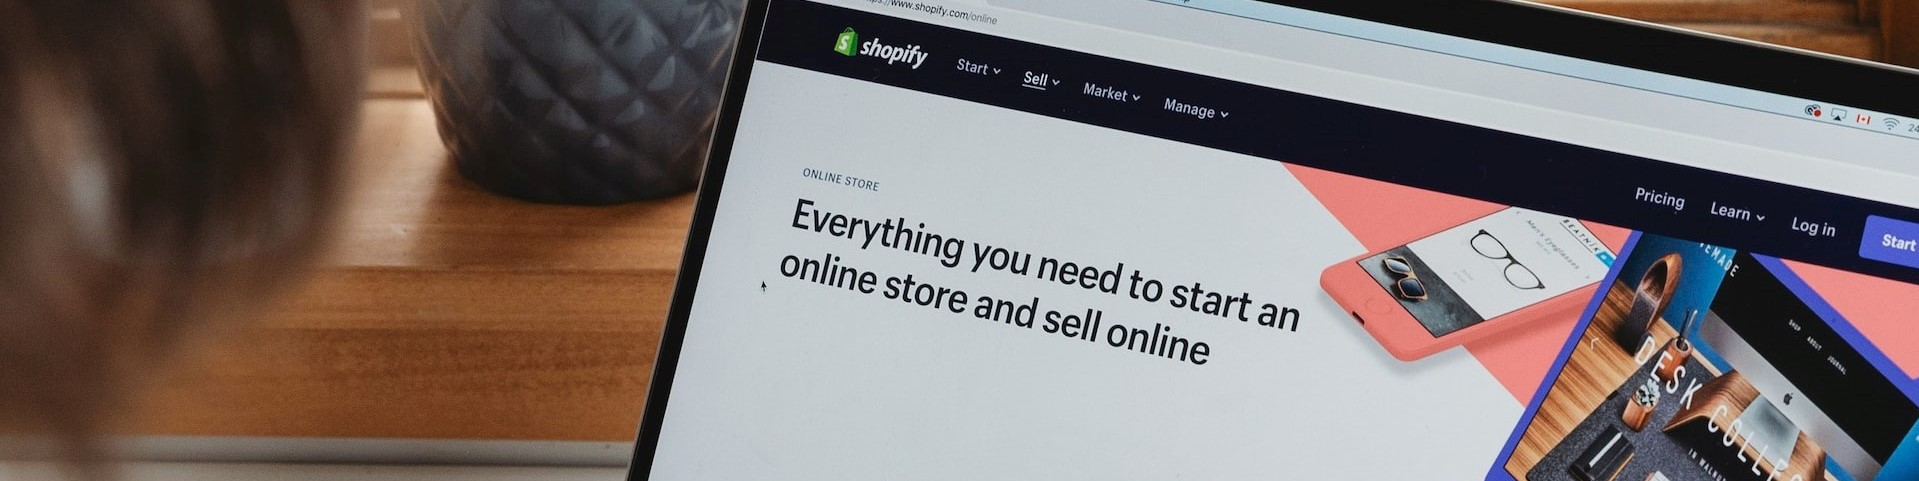 Die besten Shopify Apps: 5 Applikationen, die Ihren Onlineshop auf Vordermann bringen